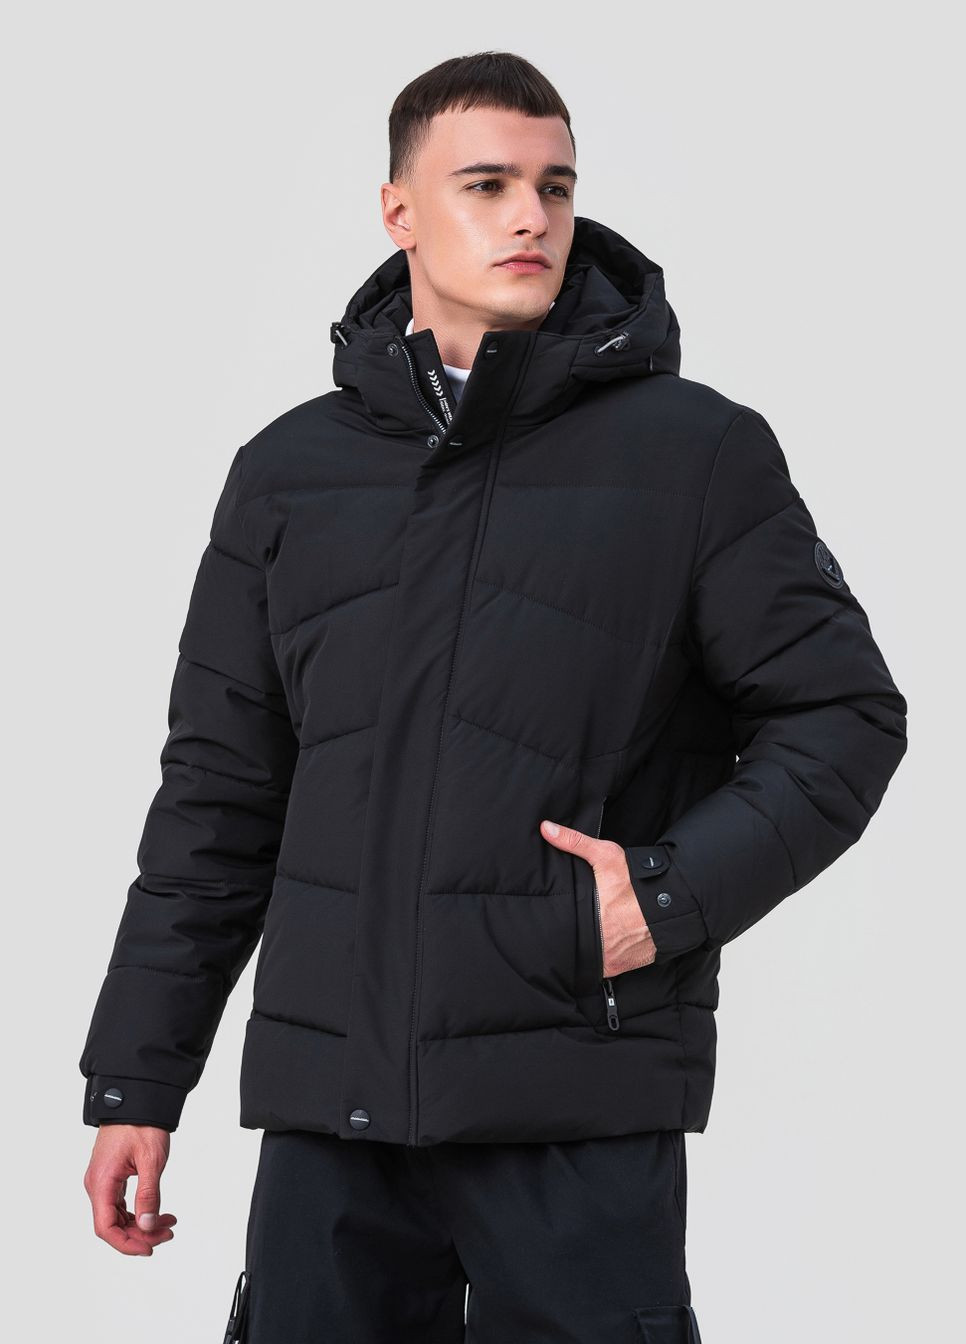 Чорна зимня стильна чоловіча куртка модель 23-2227 Black Vinyl